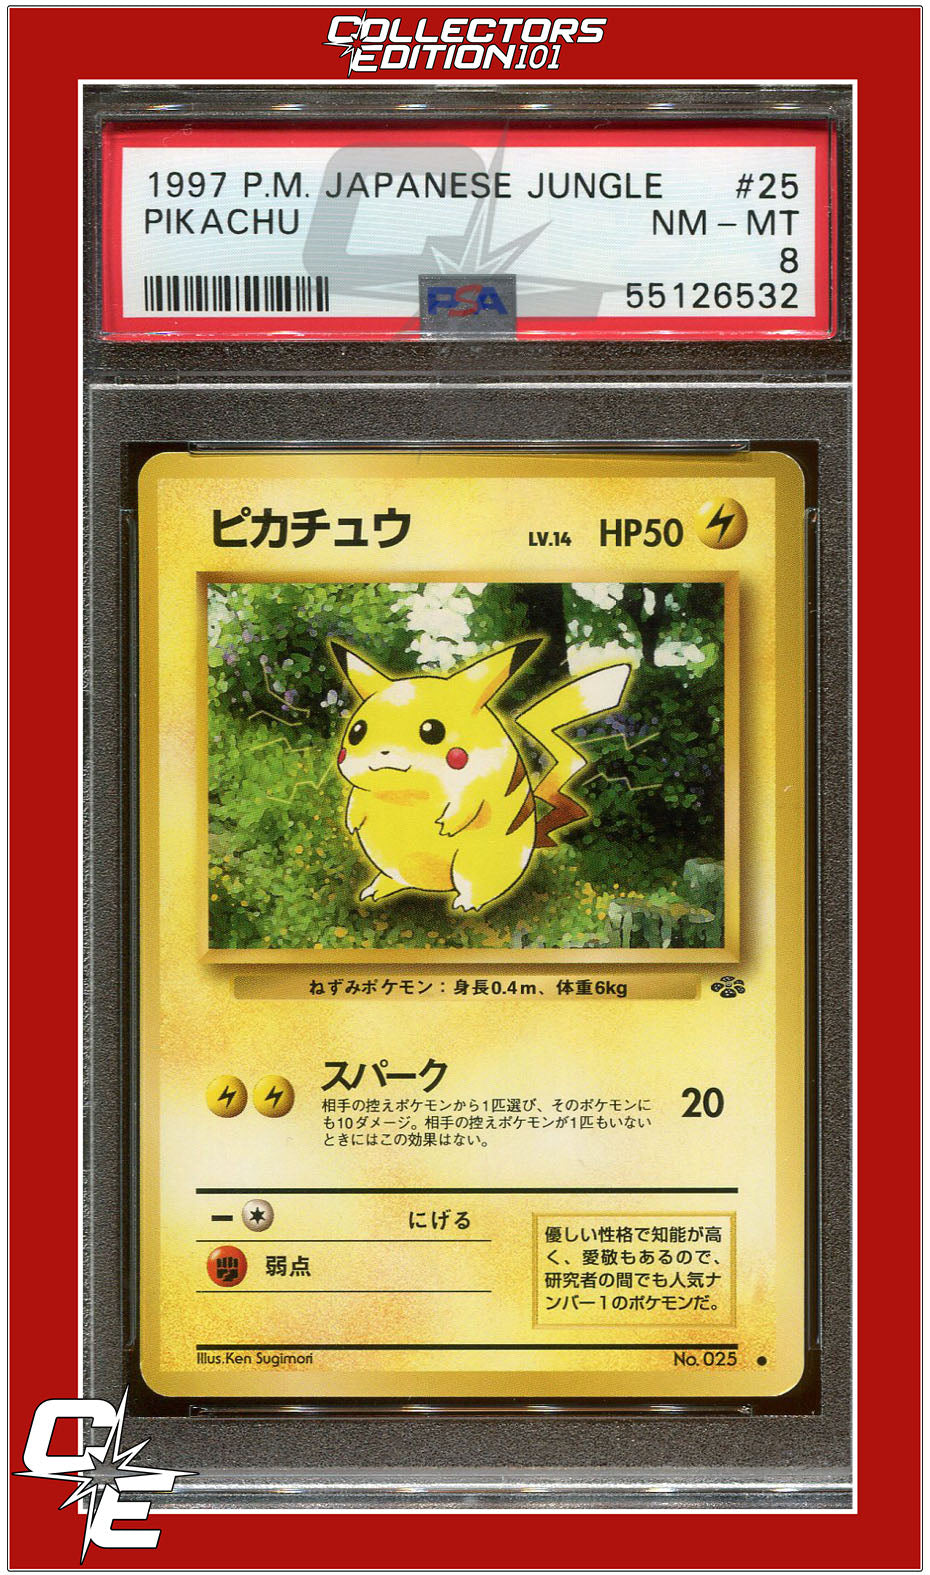 Japanese Jungle 25 Pikachu PSA 8